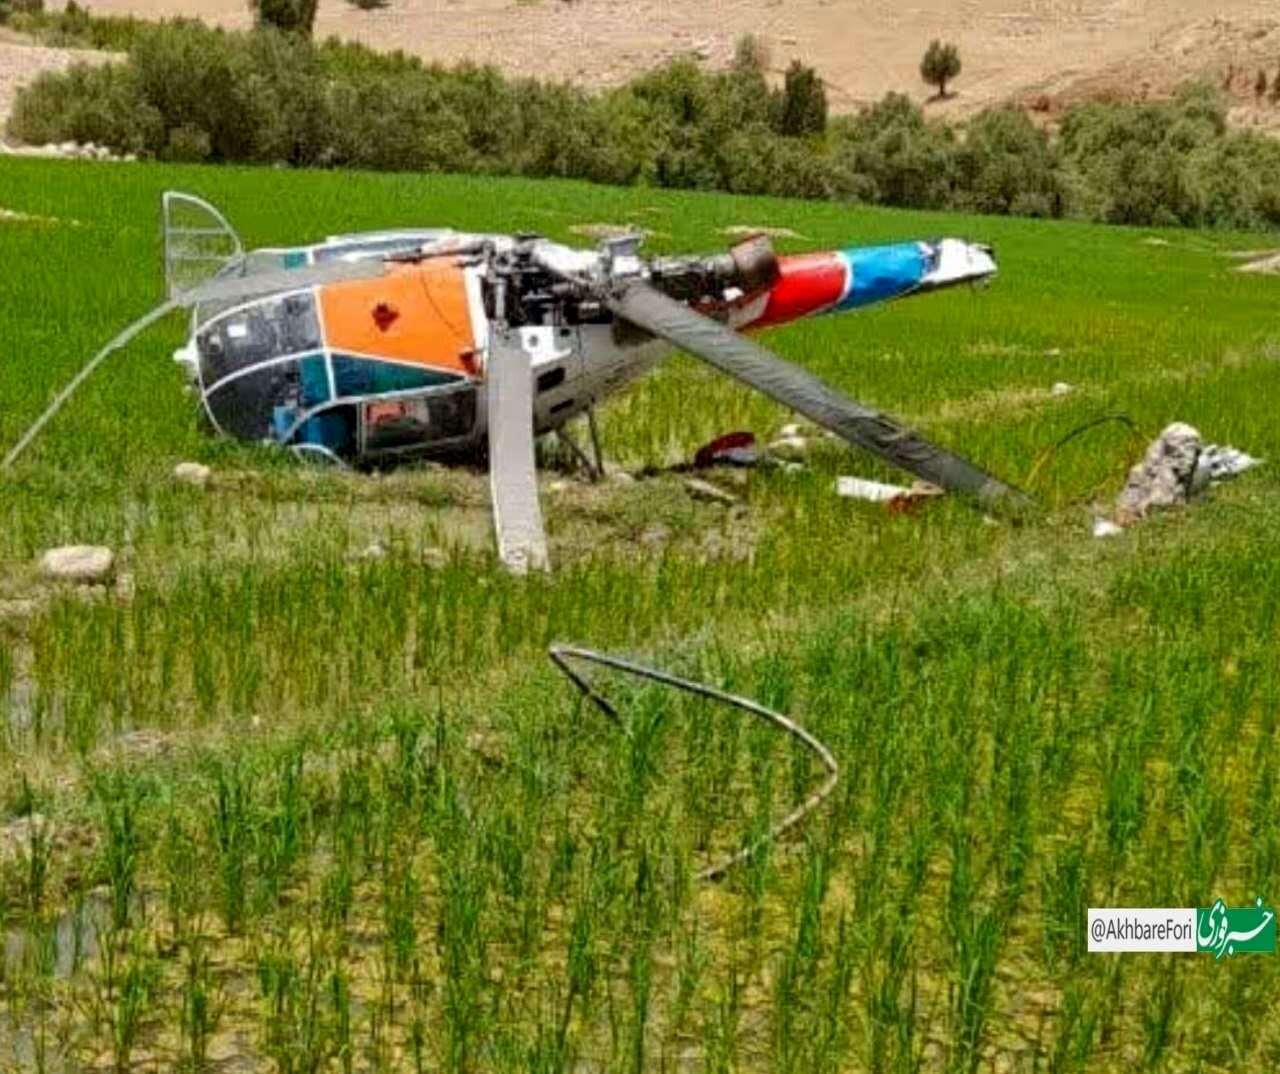 عکس | تصویری از بالگرد امدادی سقوط کرده در منطقه دیشموک کهگیلویه و بویراحمد